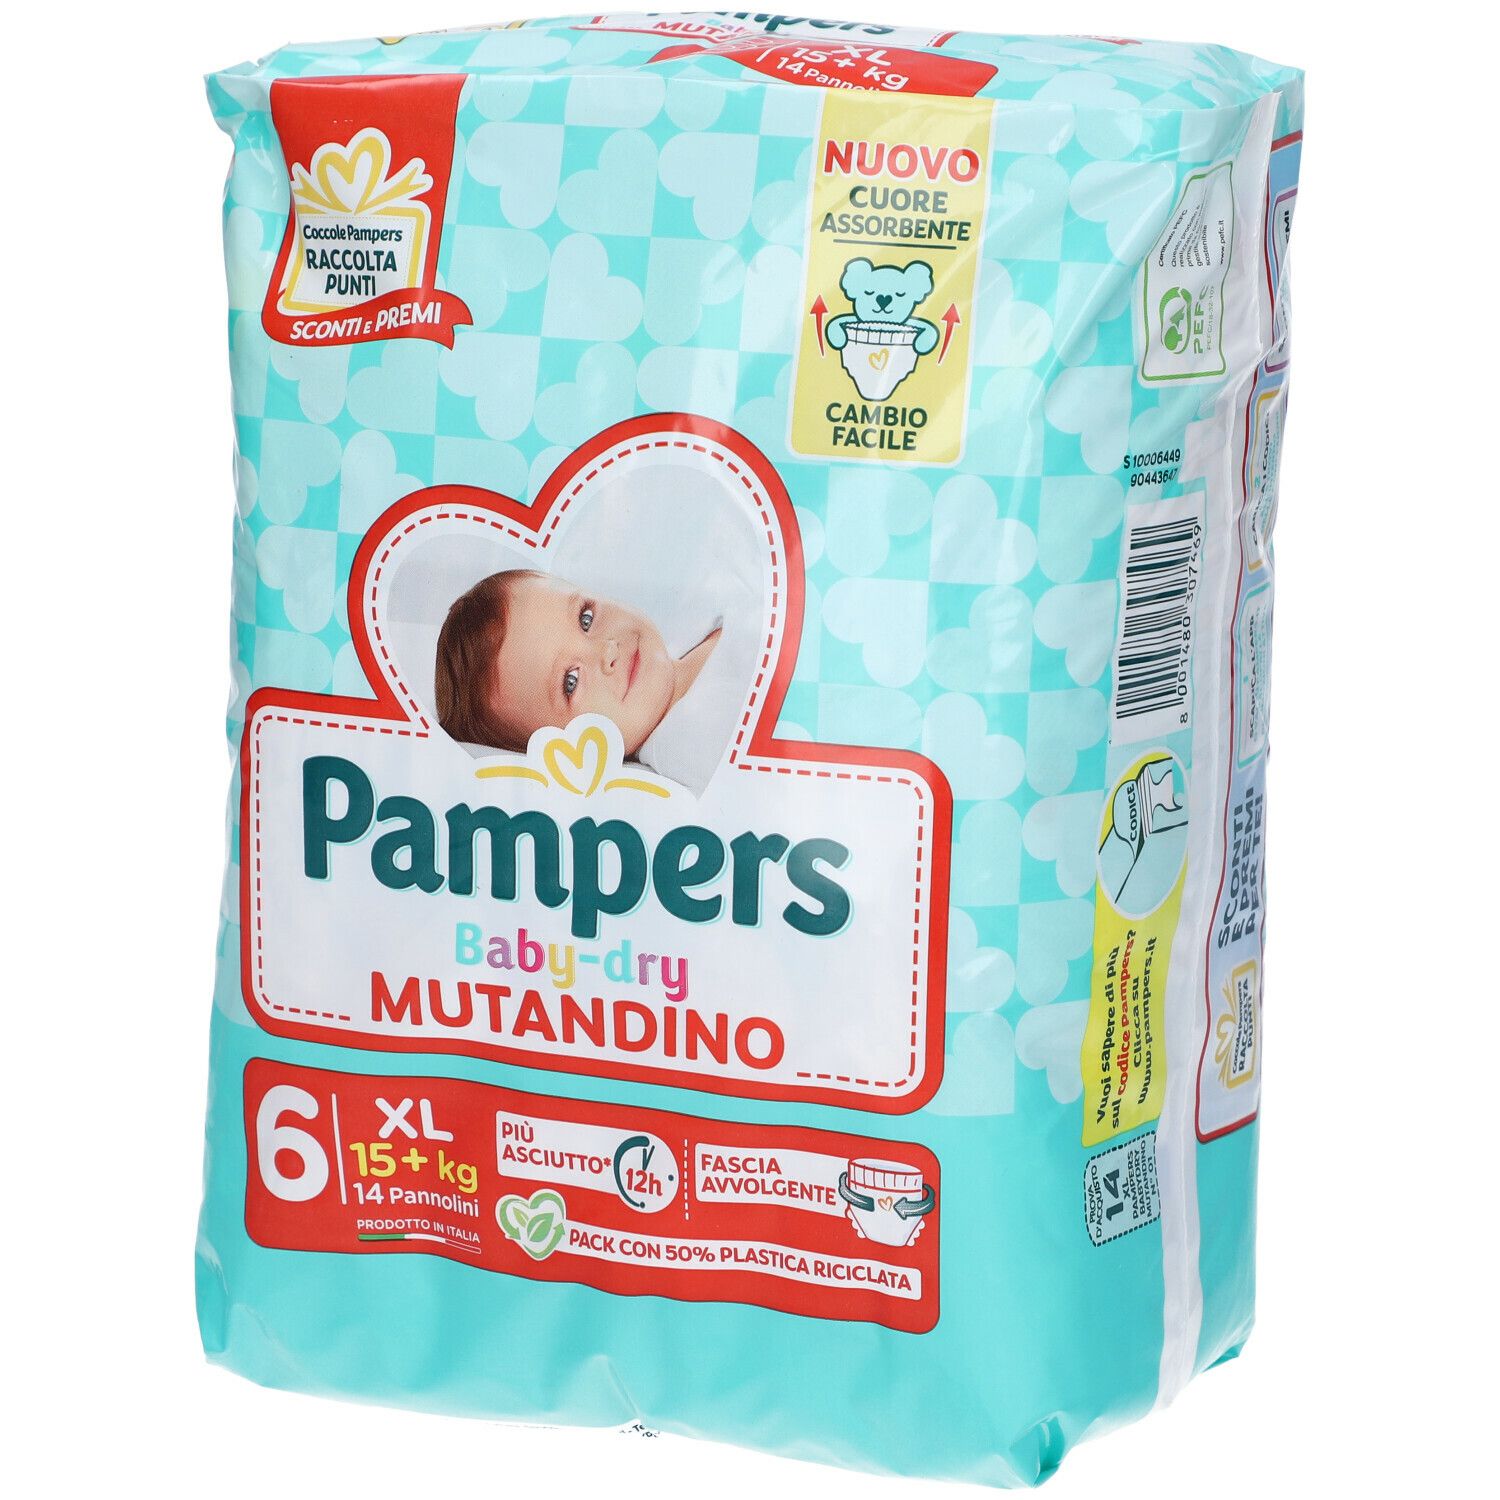 Image of Pampers Baby Dry Mutandino 6 XL